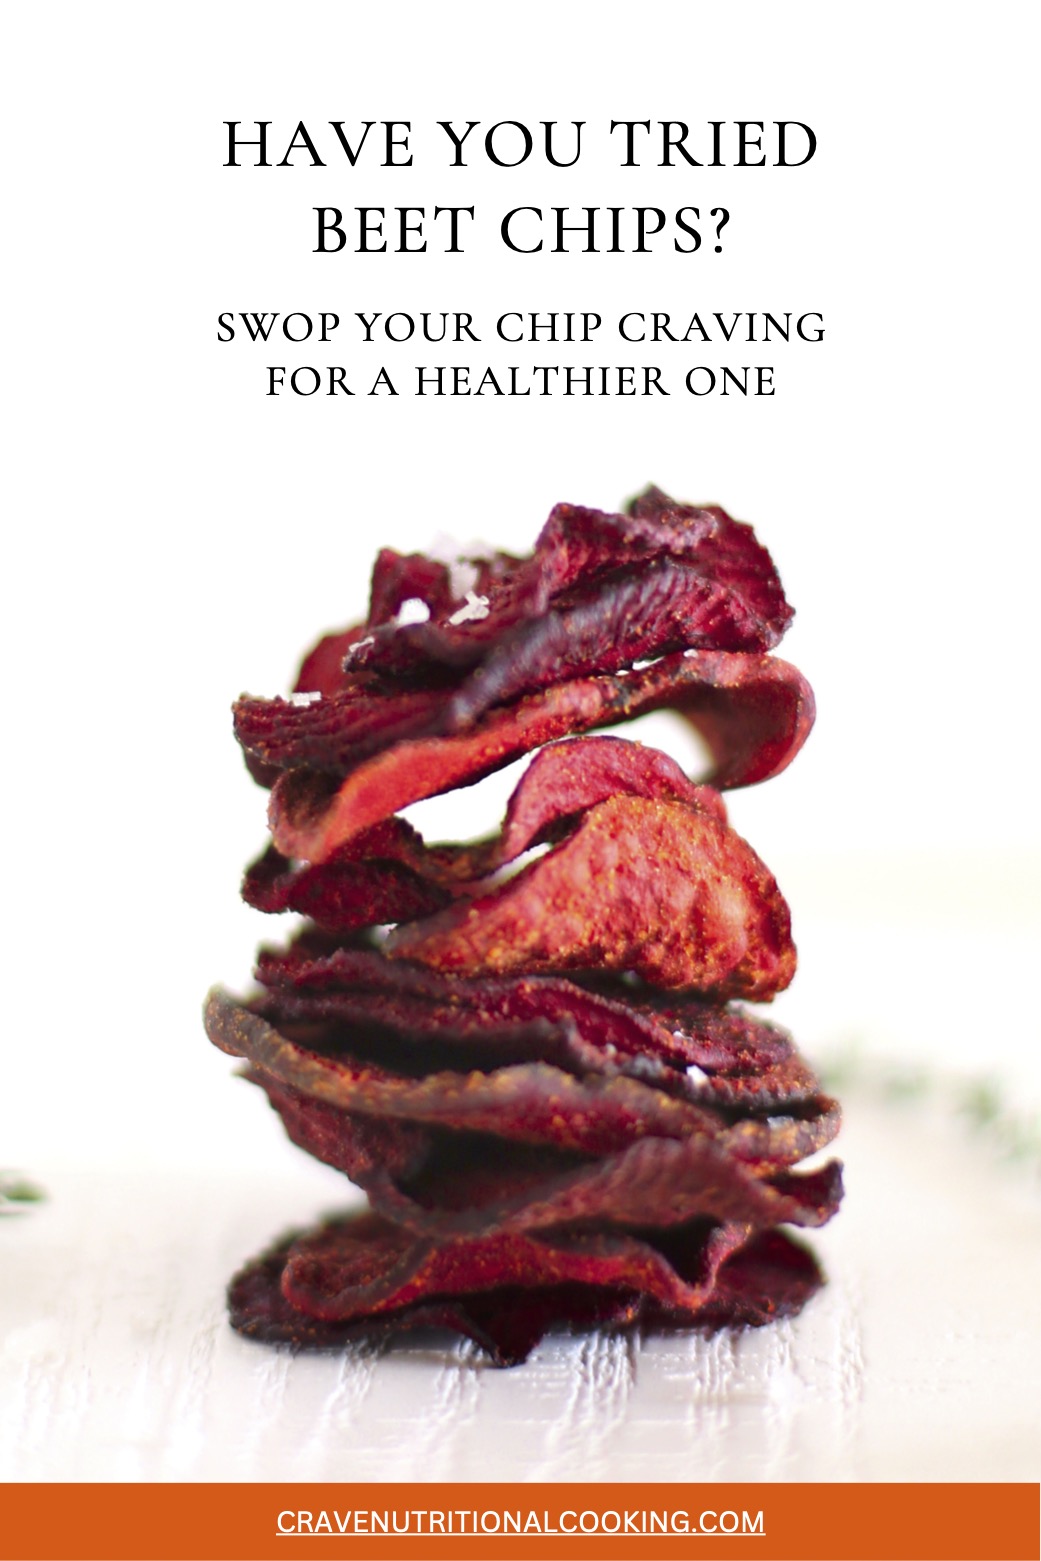 beet-chips-healthy-craving-swop